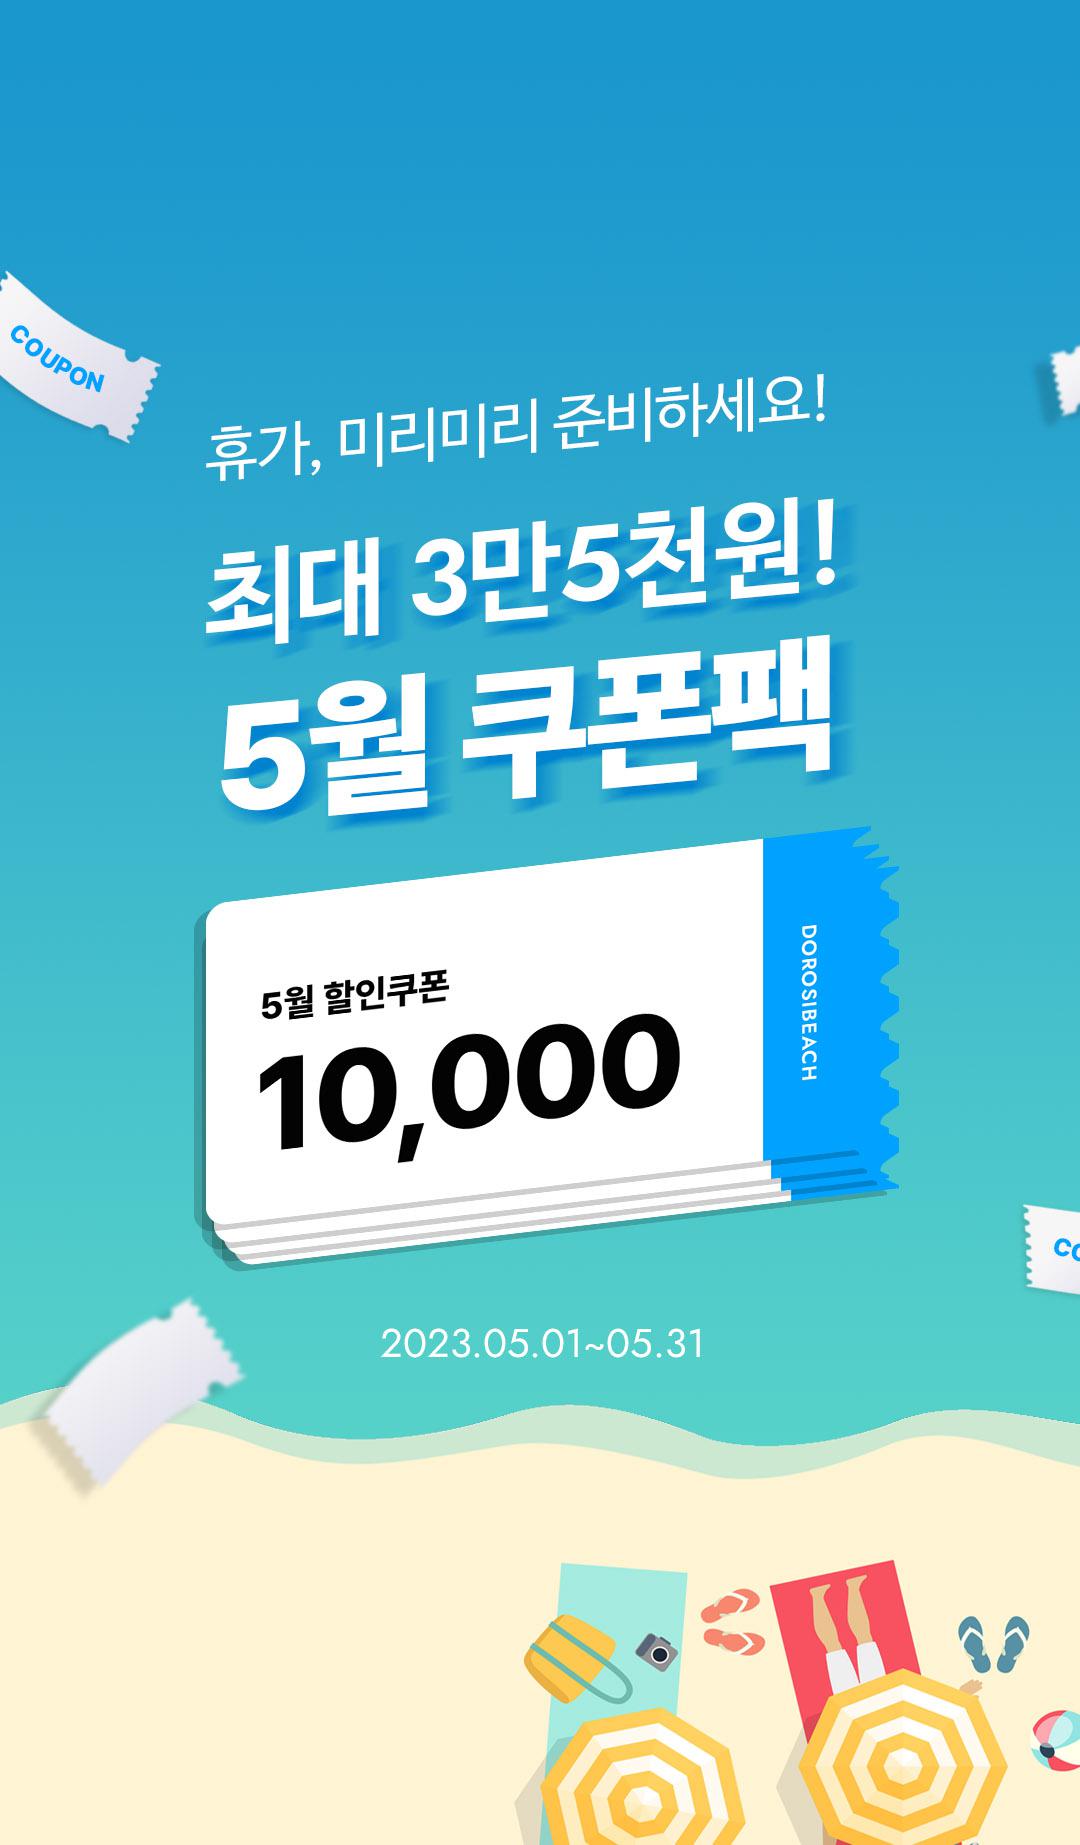 5월 웹/앱 3만 5천원 쿠폰팩 Event